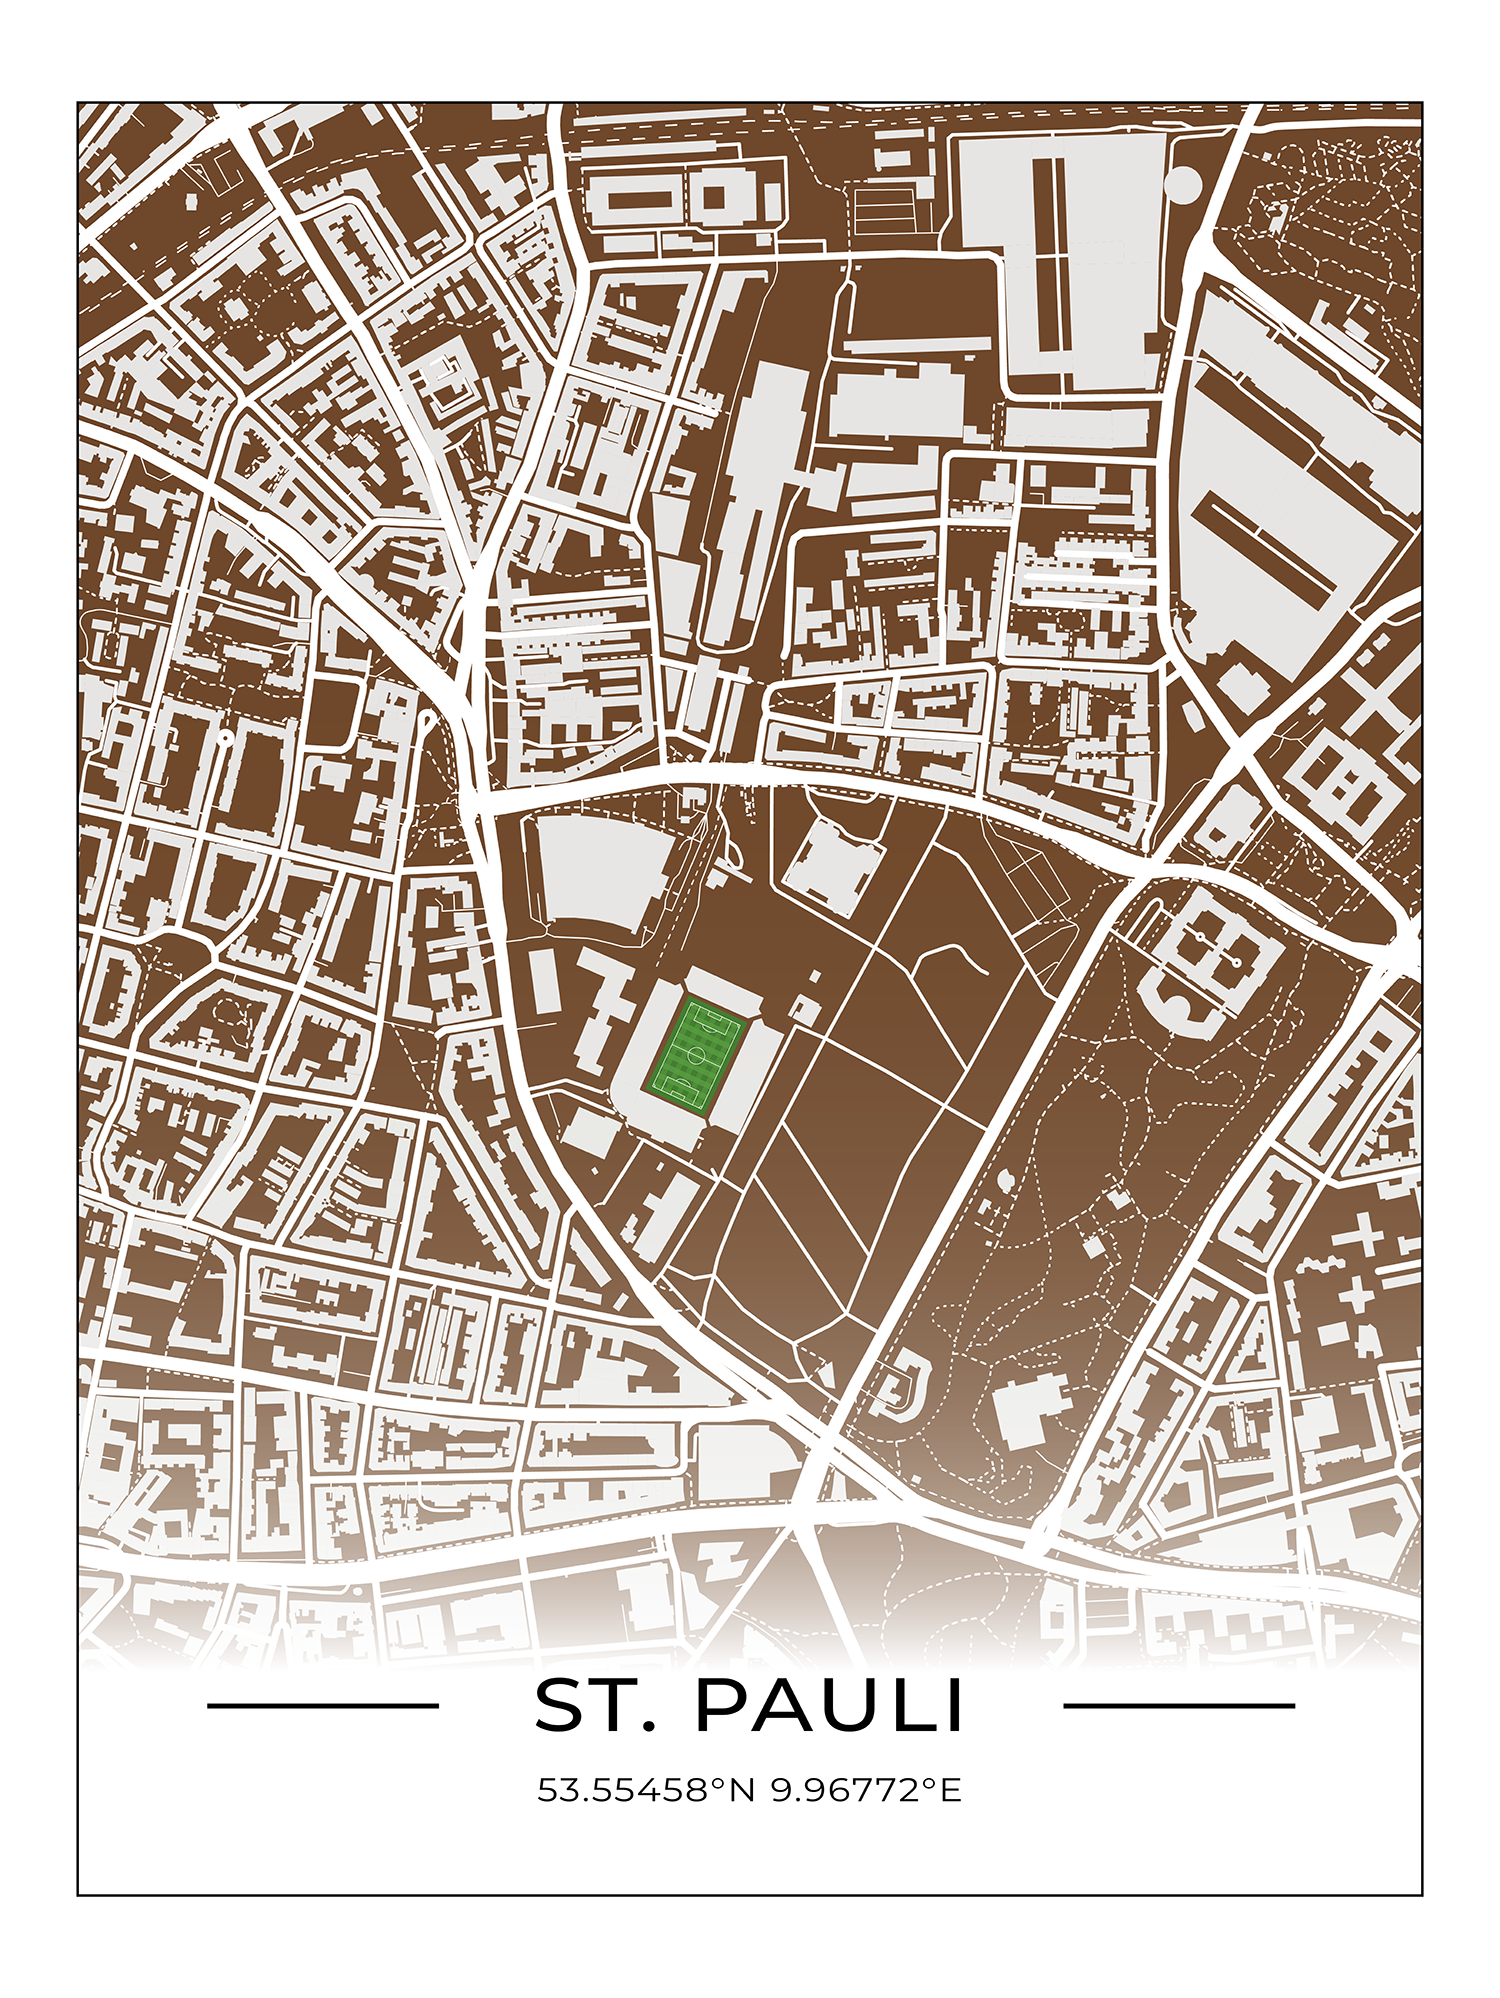 Stadion Poster St. Pauli, Fußball Karte, Fußball Poster